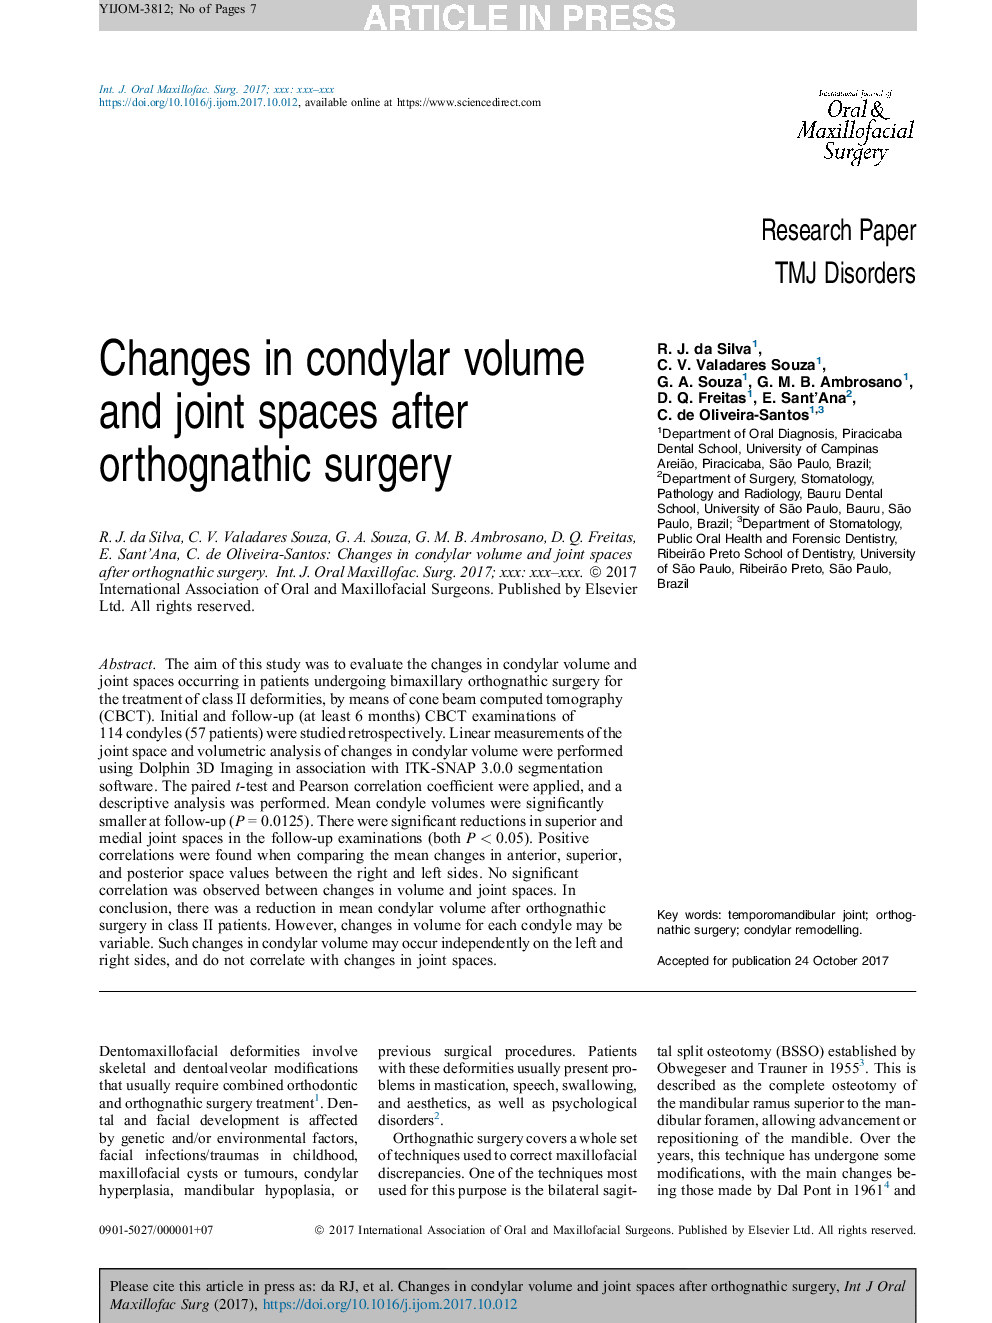 تغییرات حجم کانادیلار و فضاهای مفصلی بعد از جراحی ارتوپلاسم 